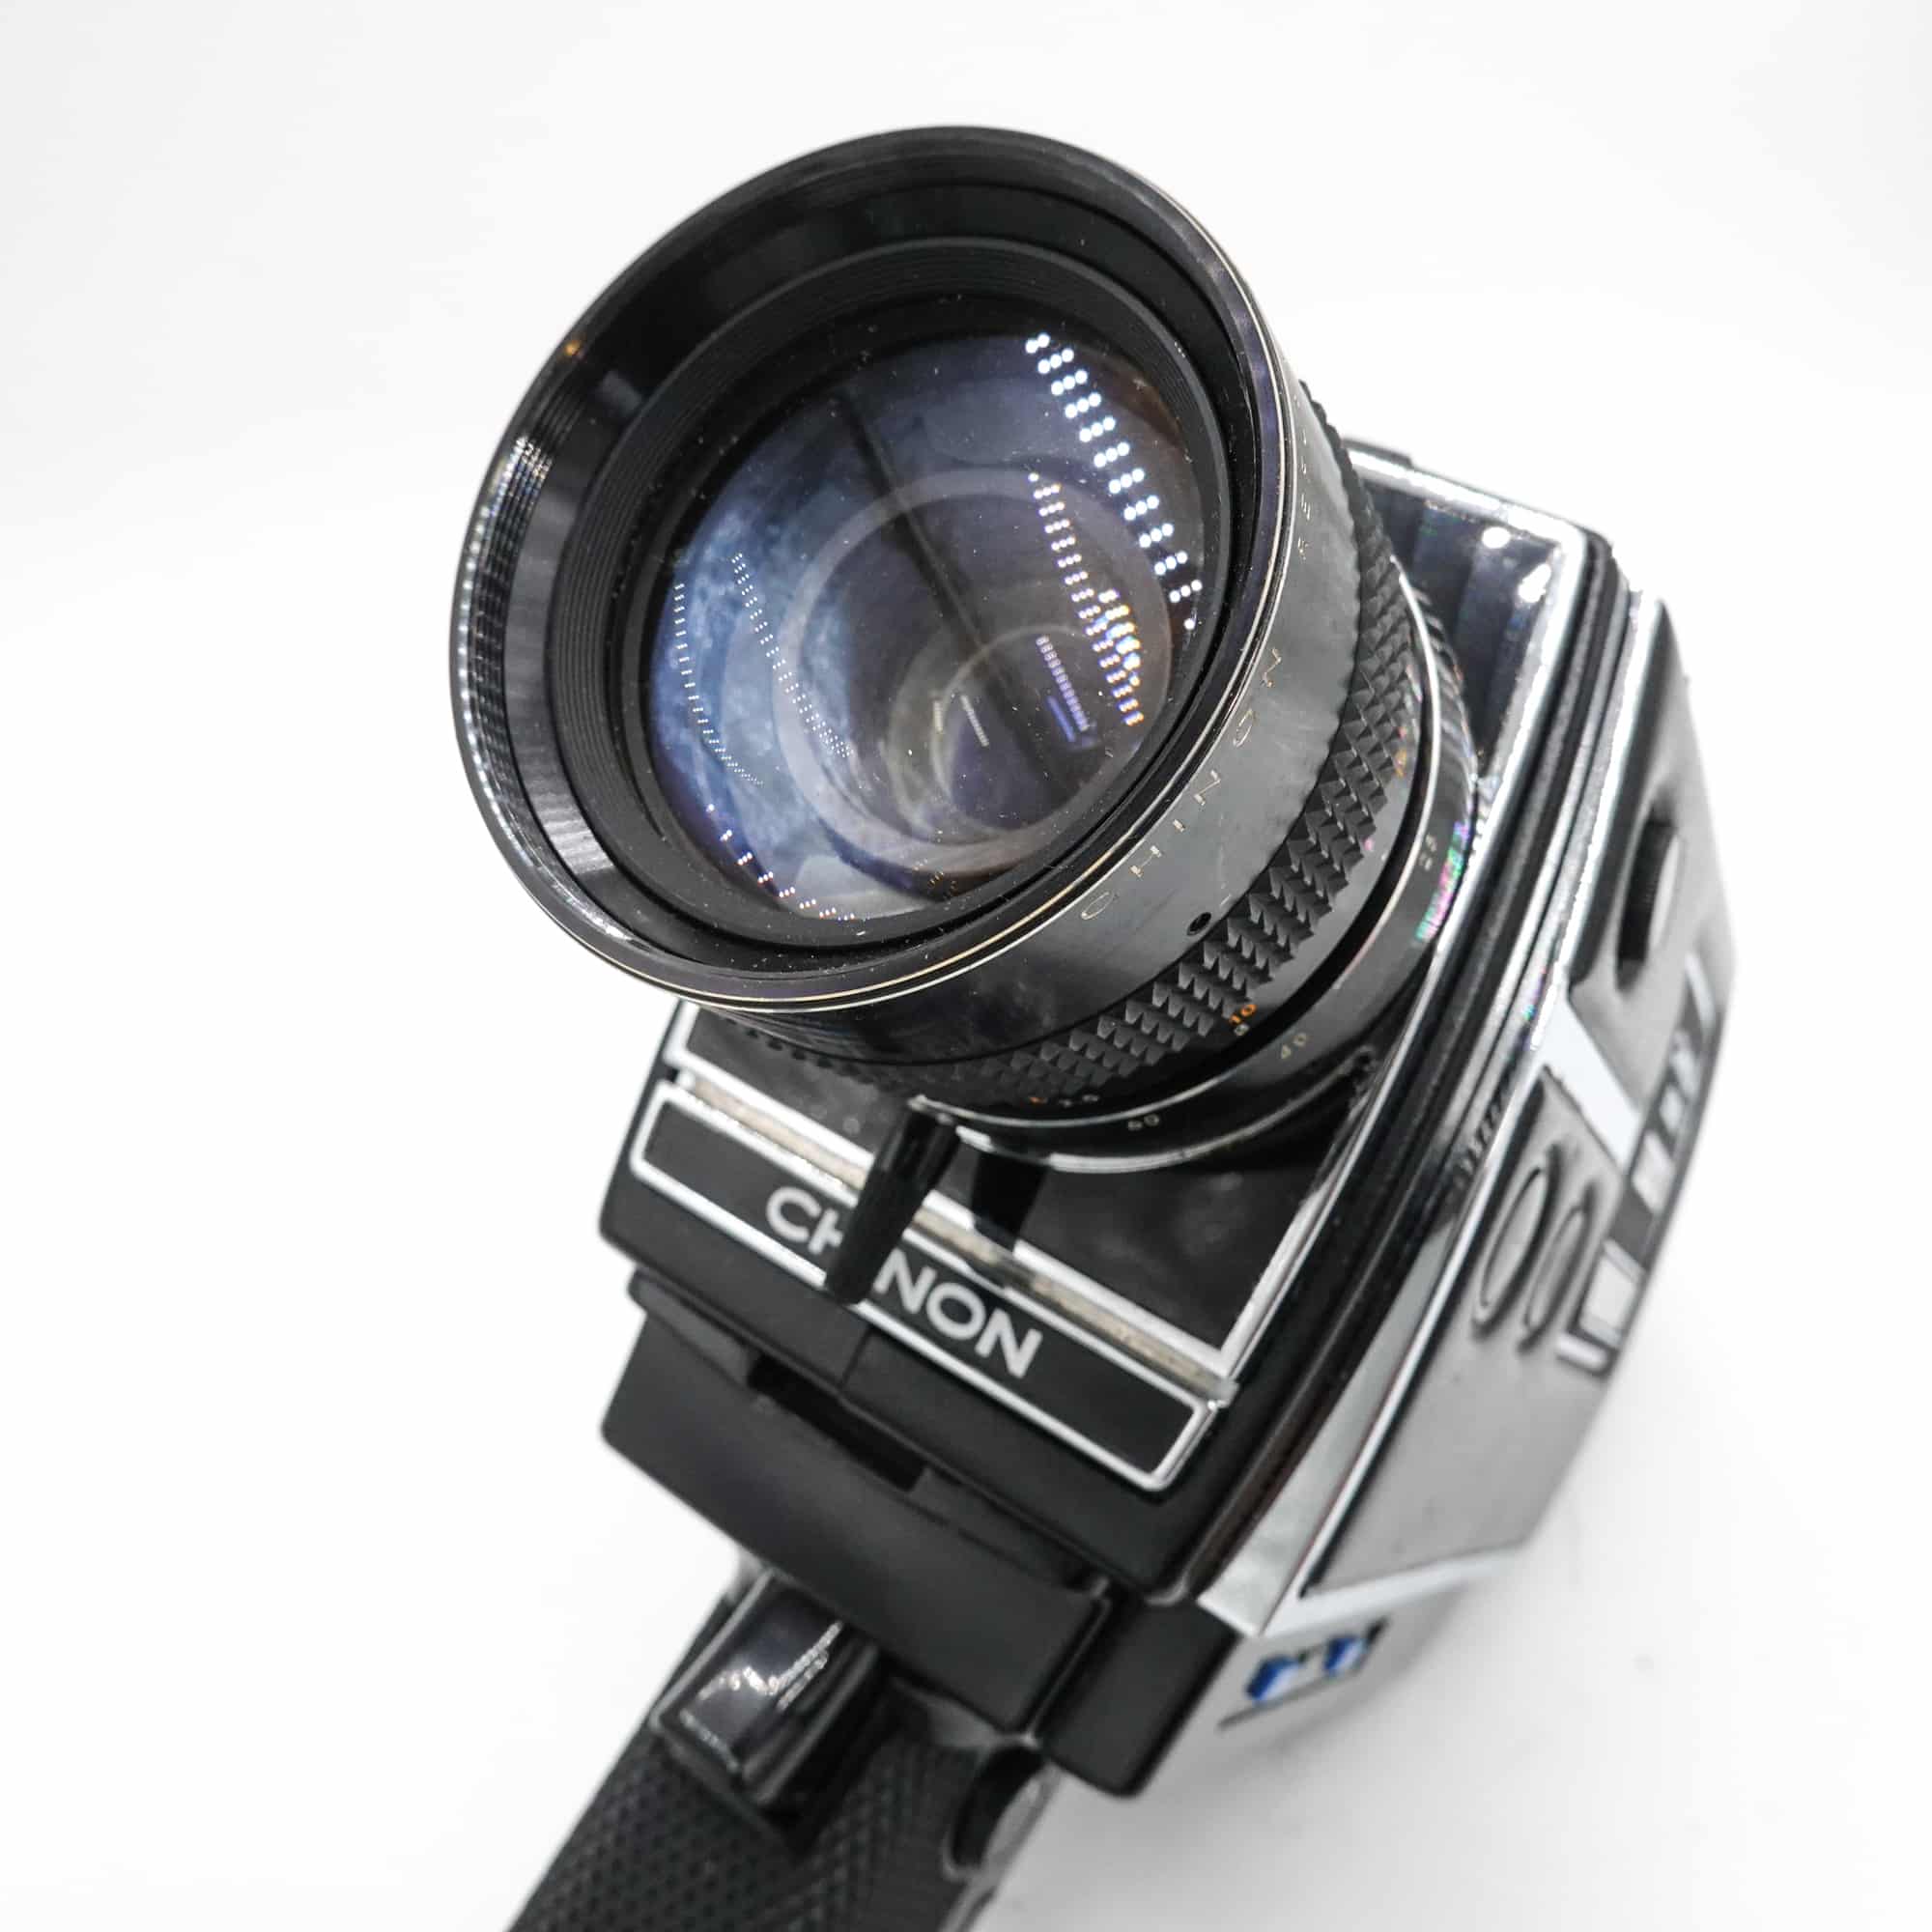 Chinon 805s Super 8 Camera